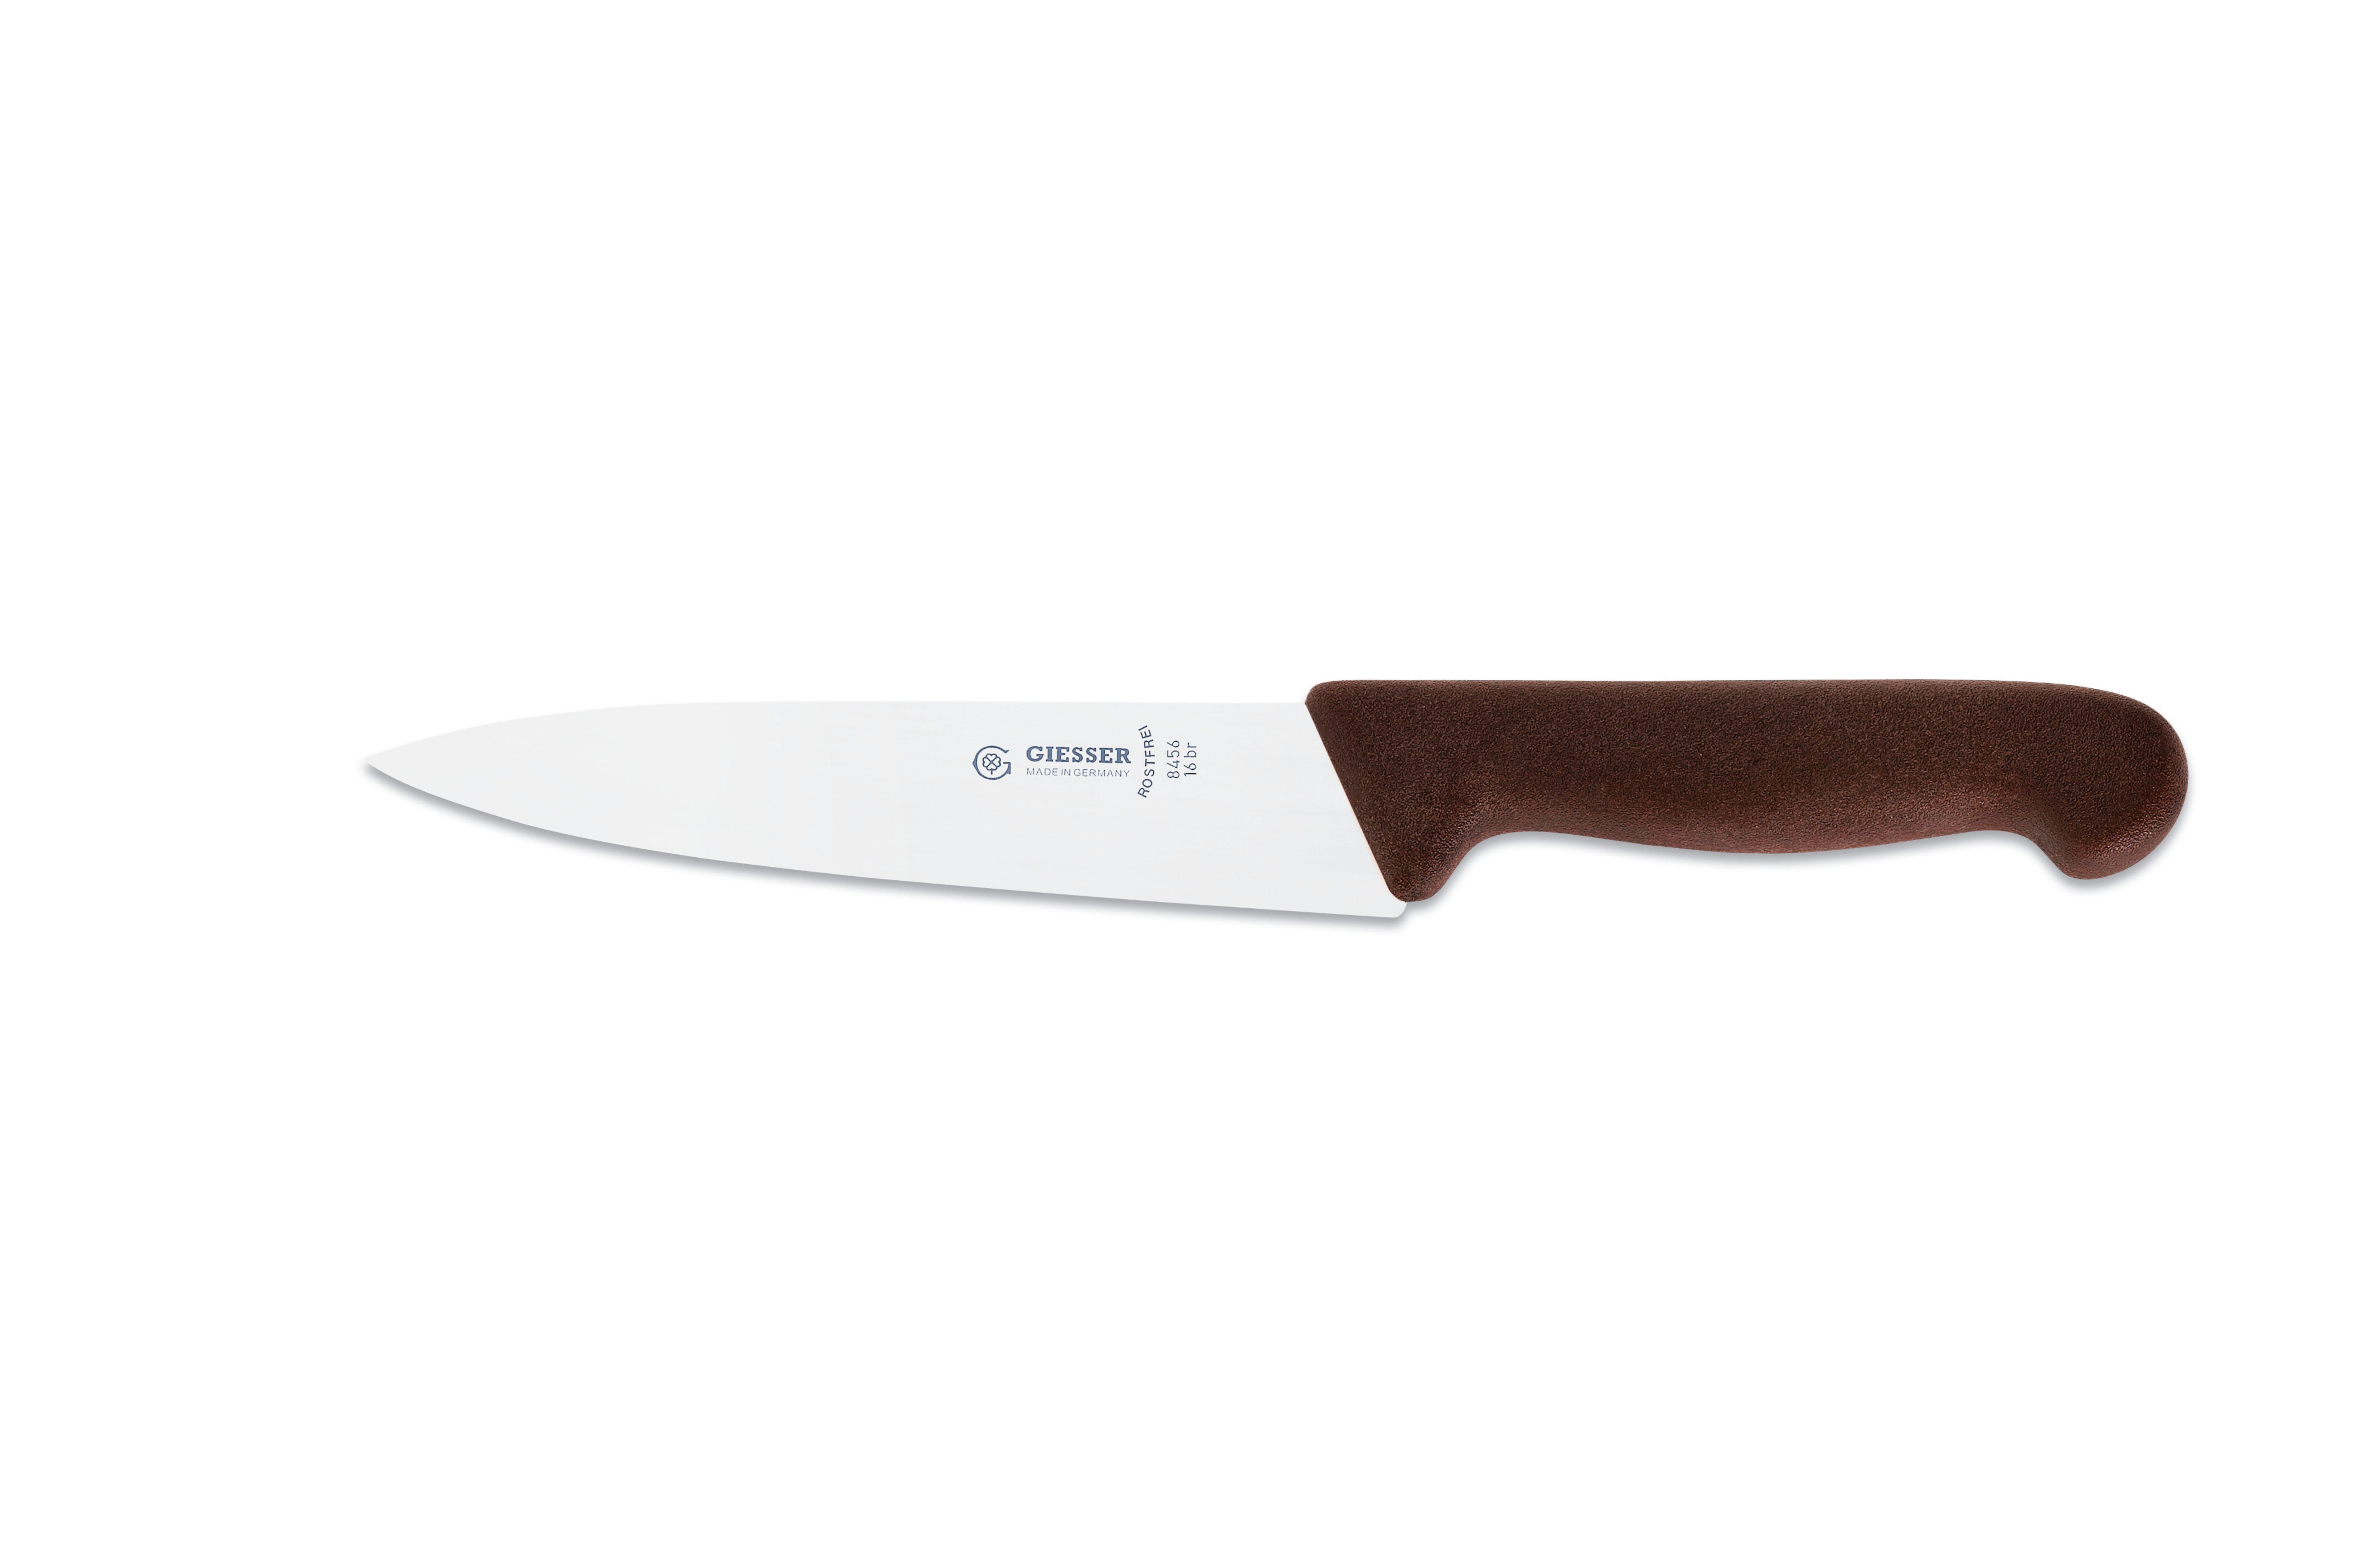 schmale, scharf braun für 8456, Küche Messer mittelspitze jede Klinge, Giesser Kochmesser Ideal Handabzug, Küchenmesser